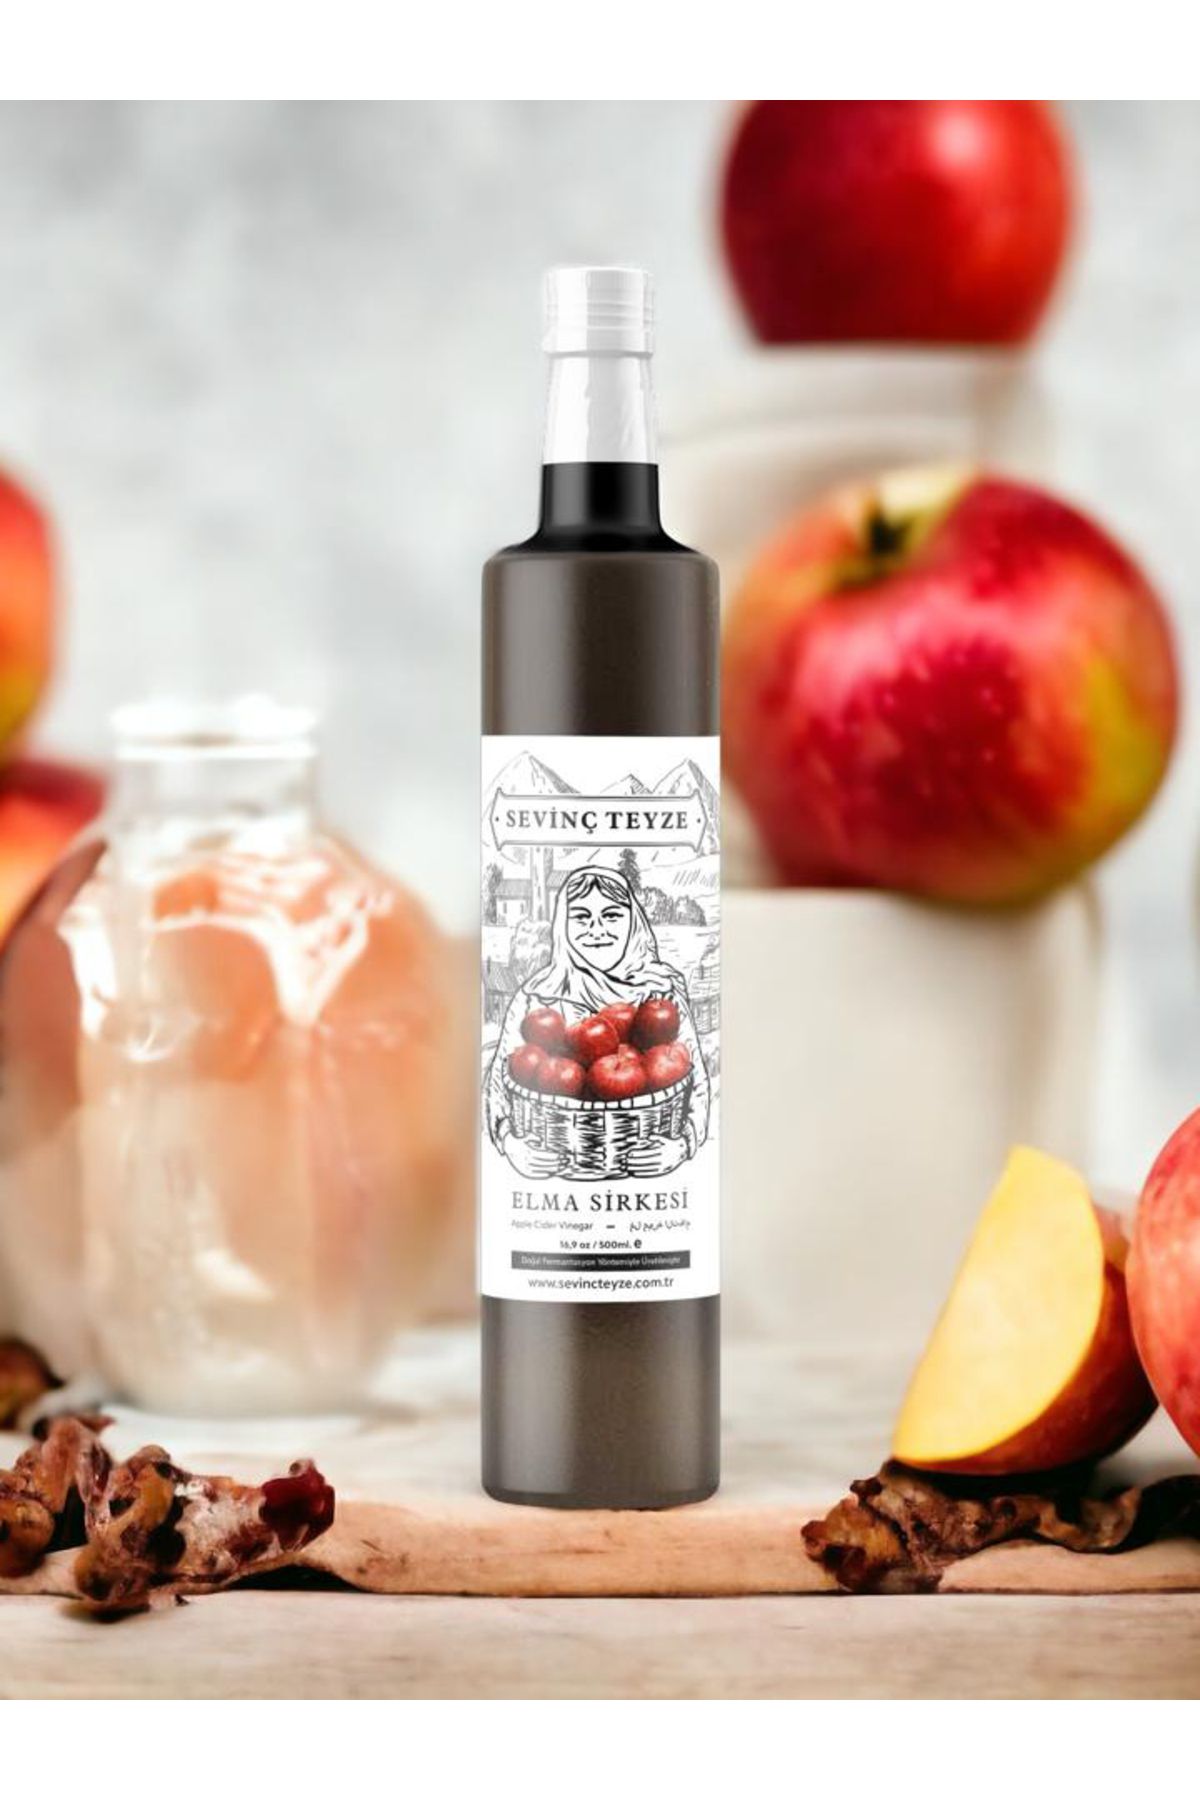 Sevinç Teyze Doğal Fermantasyon Elma Sirkesi, Apple Cider Vinegar 500ml.